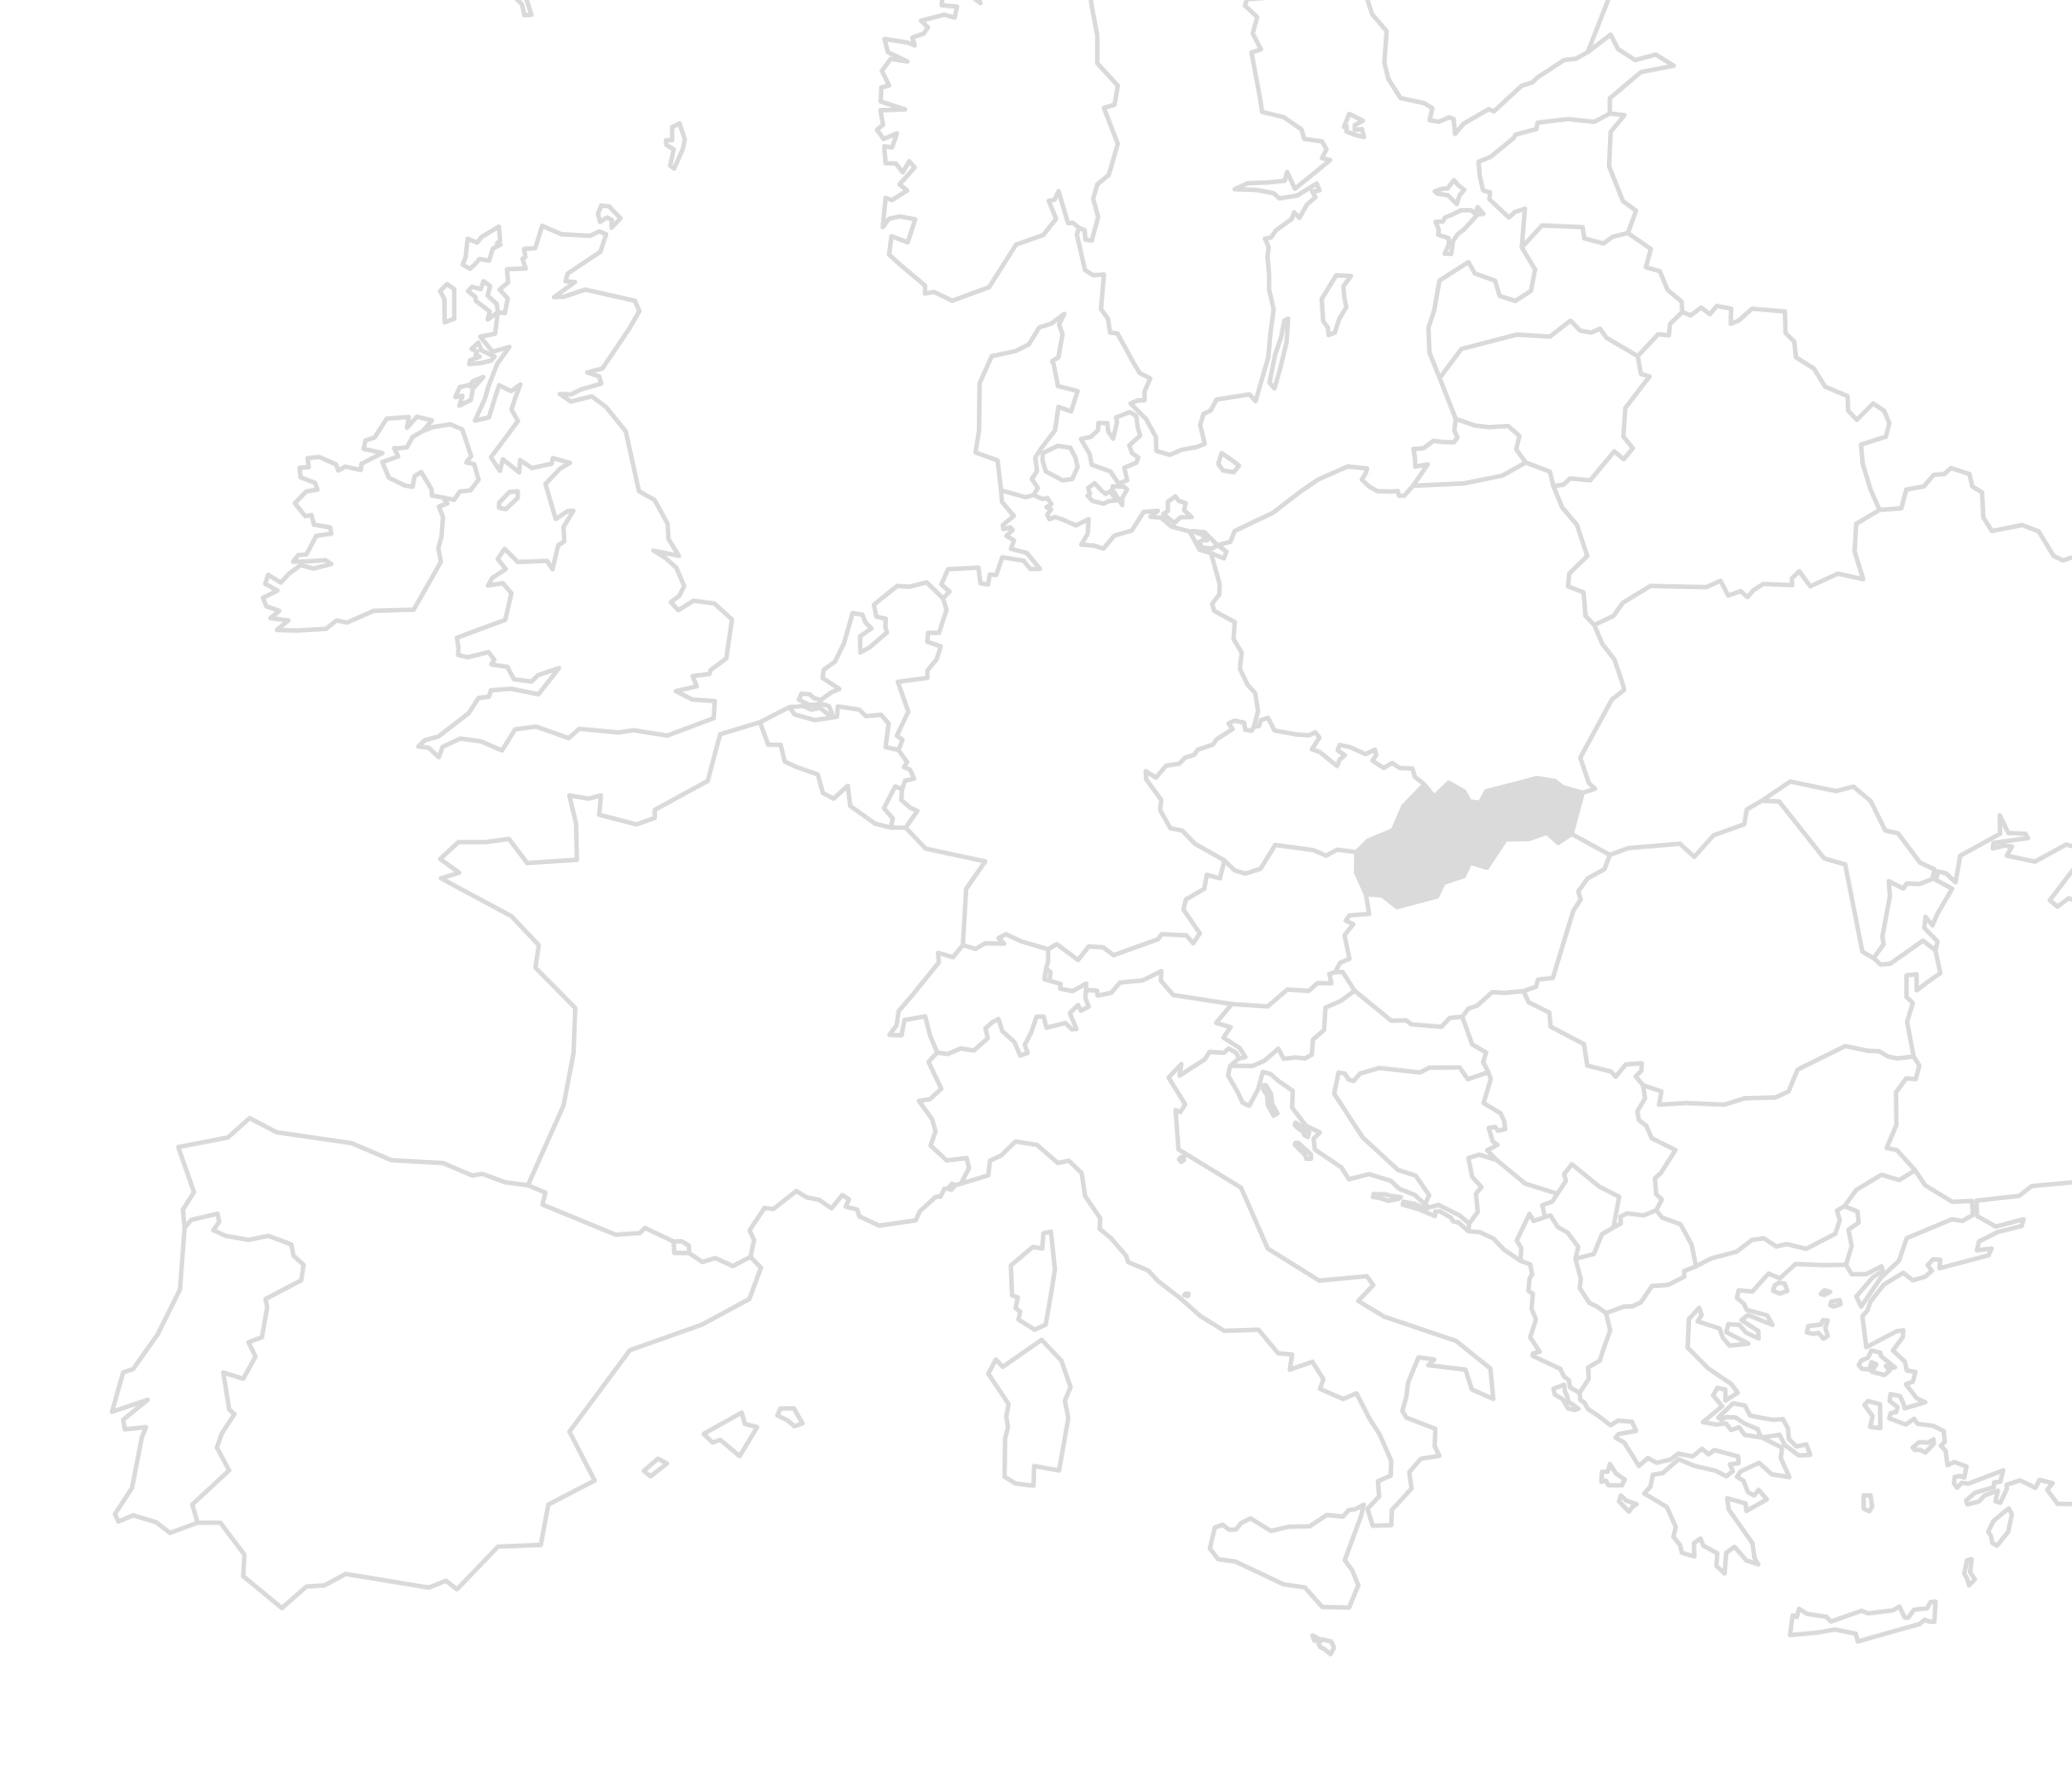 Eine weiß-graue Europakarte mit Einzeichnung der Länder in denen Slowakei grau gefüllt ist. Die Karte soll den Standort des Bauprojekts verdeutlichen.